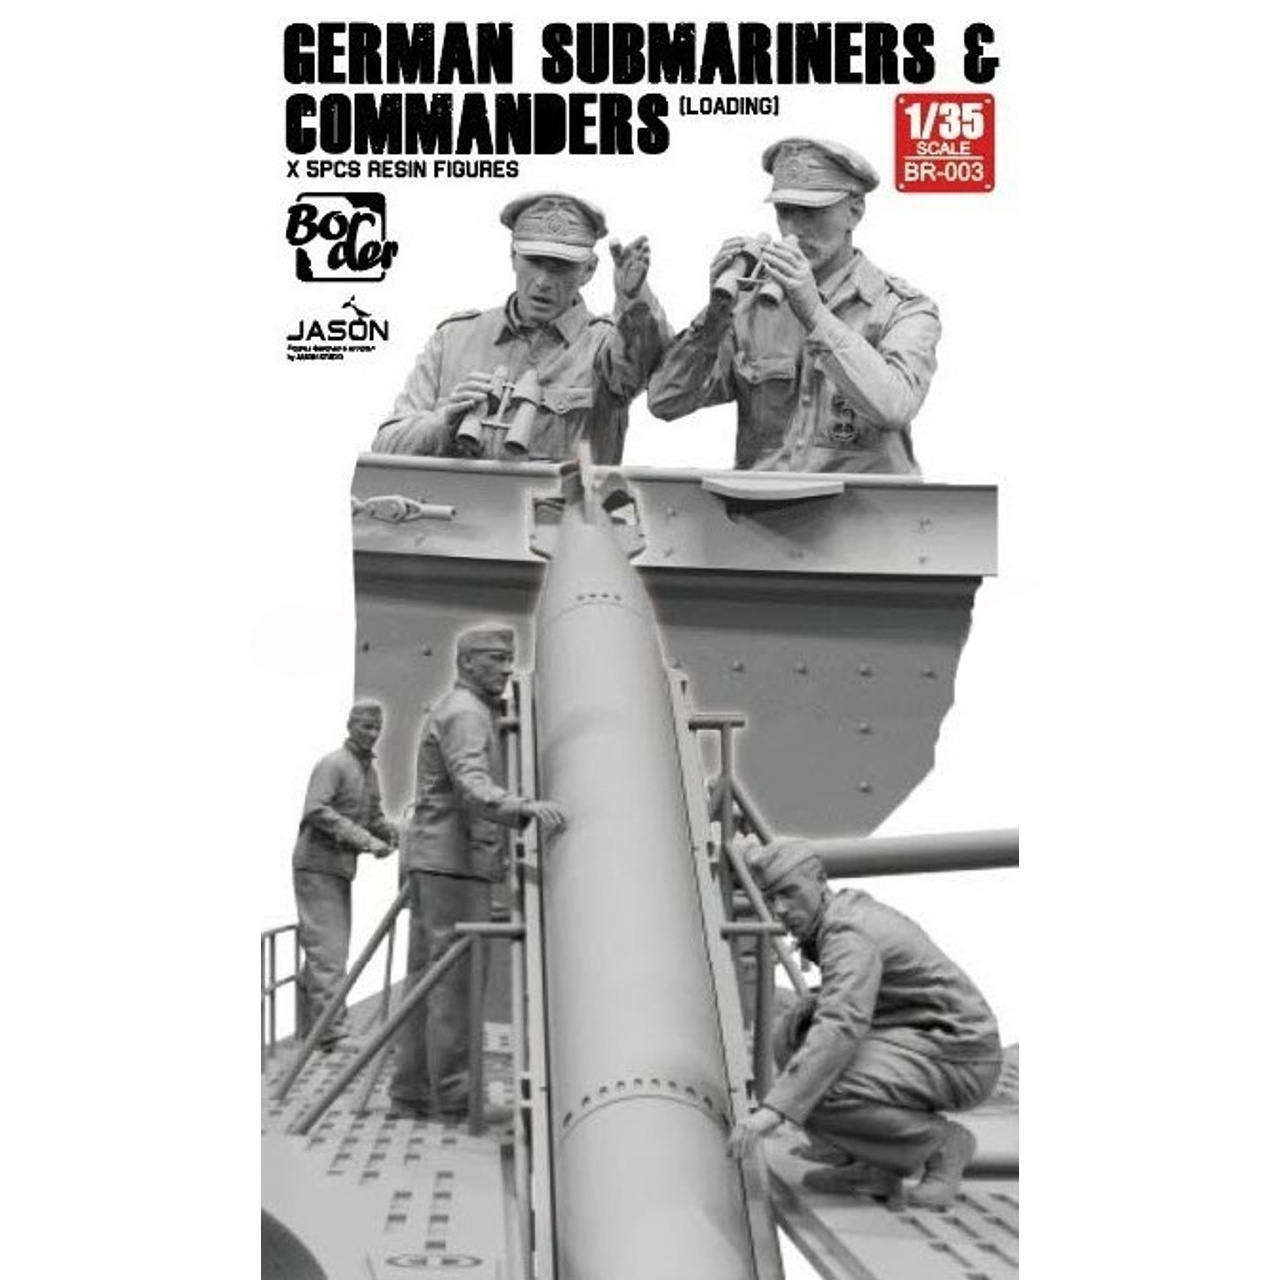 BR-003 Border Model 1/35 Немецкие подводники и командир загружают торпеду (5 шт.)